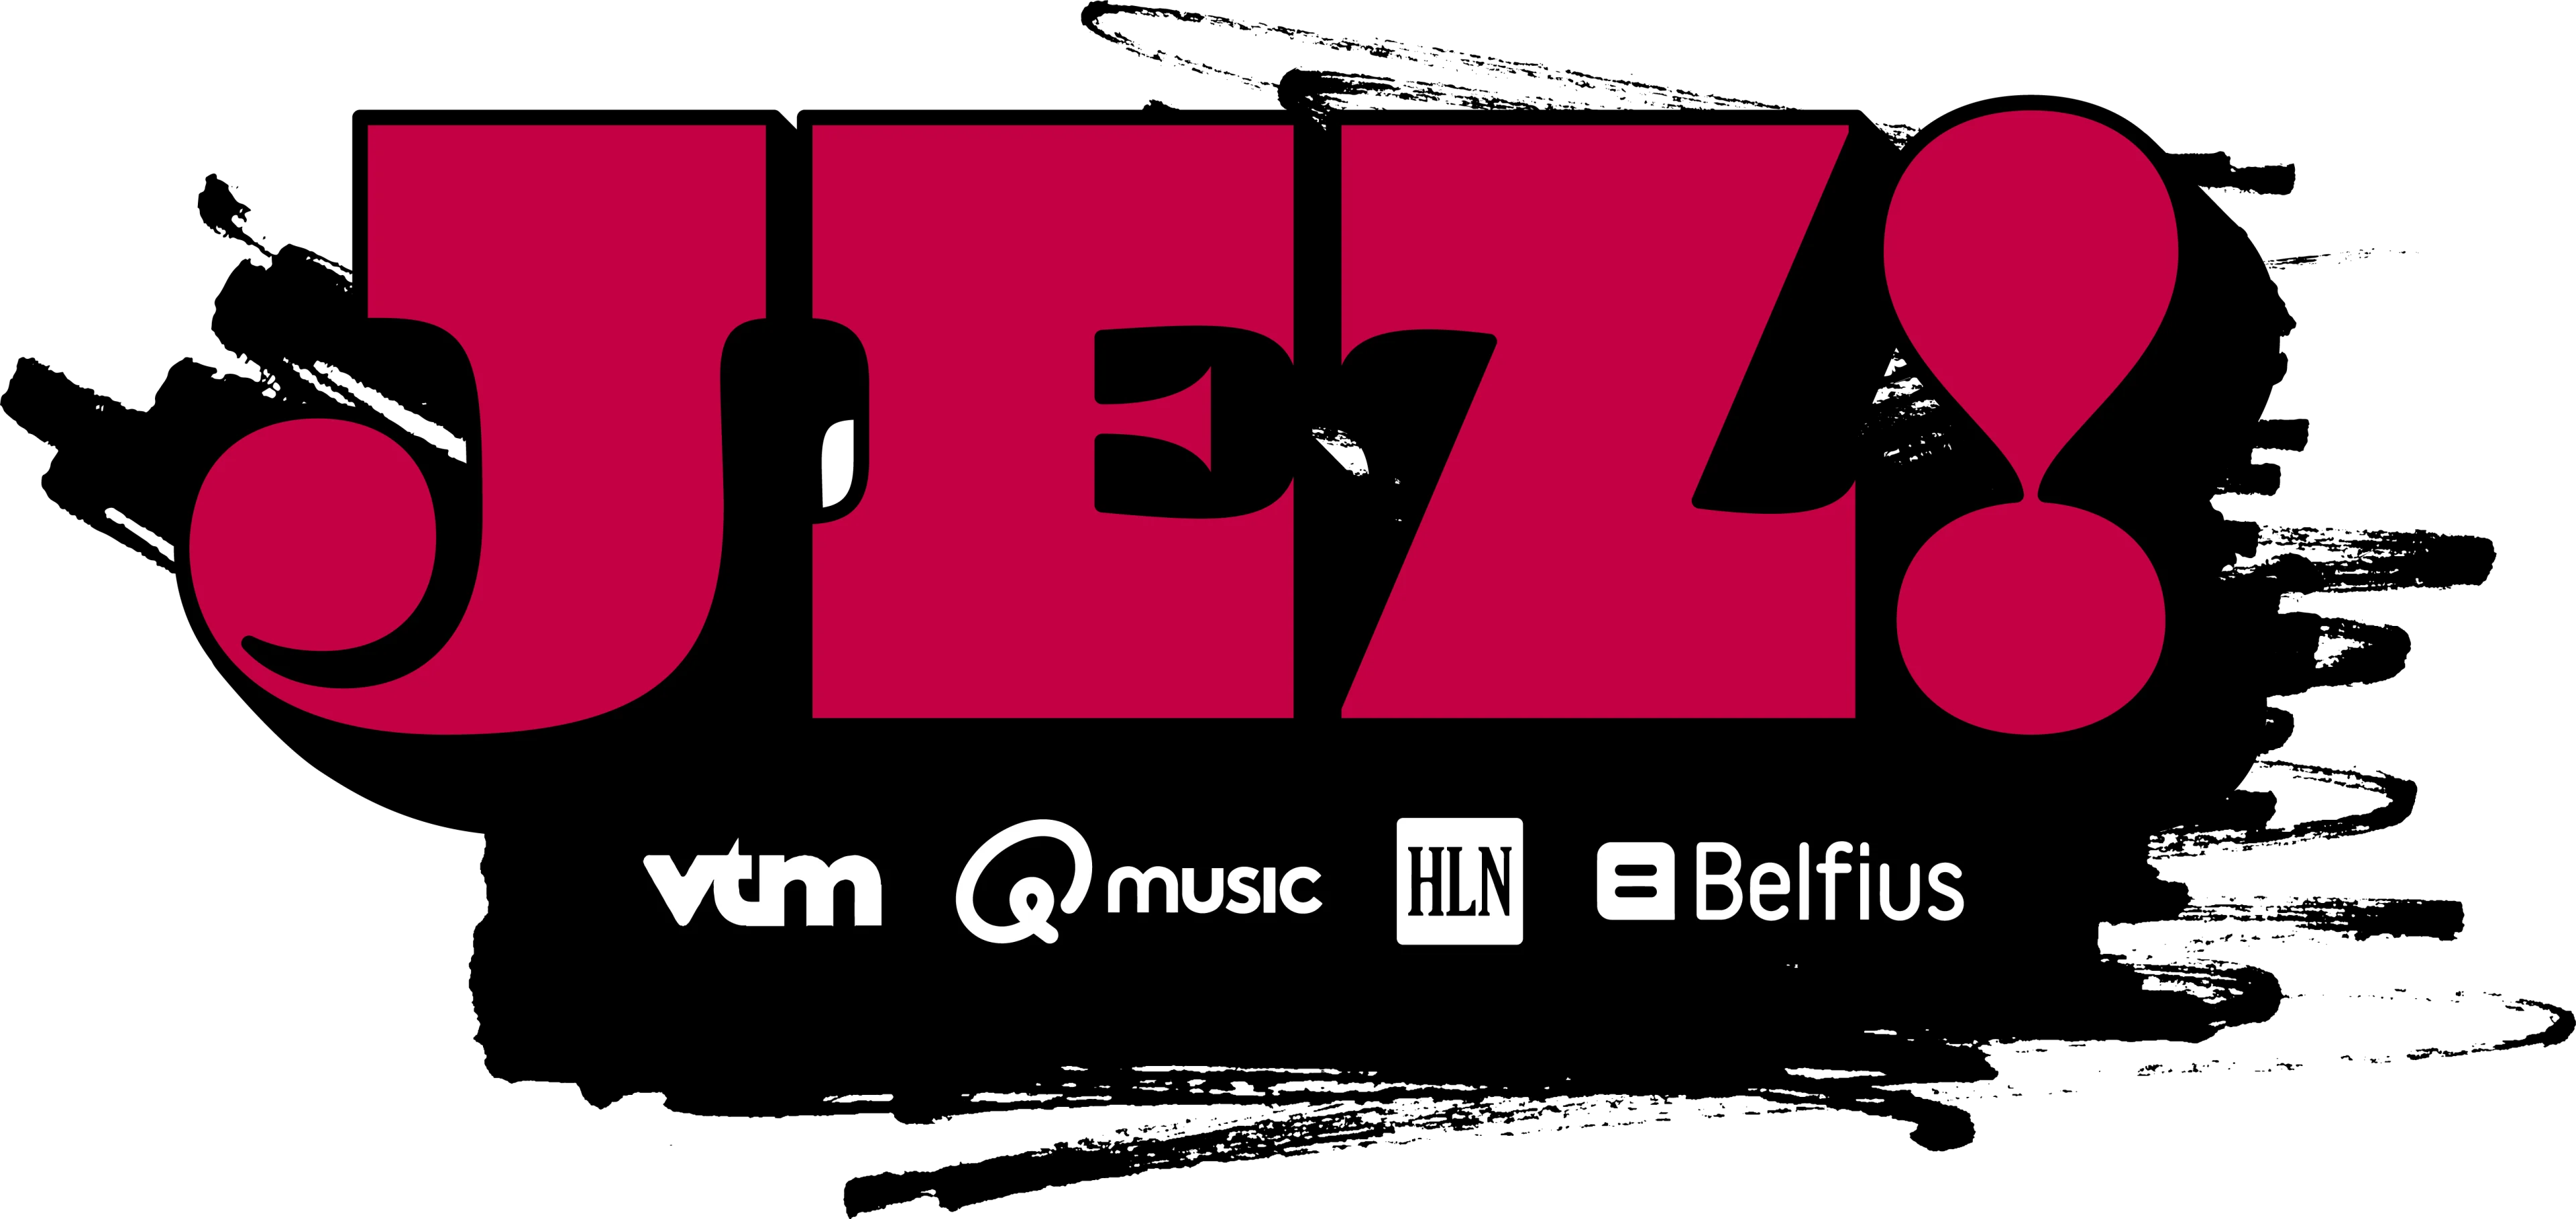 JEZ!-logo (Rubis)